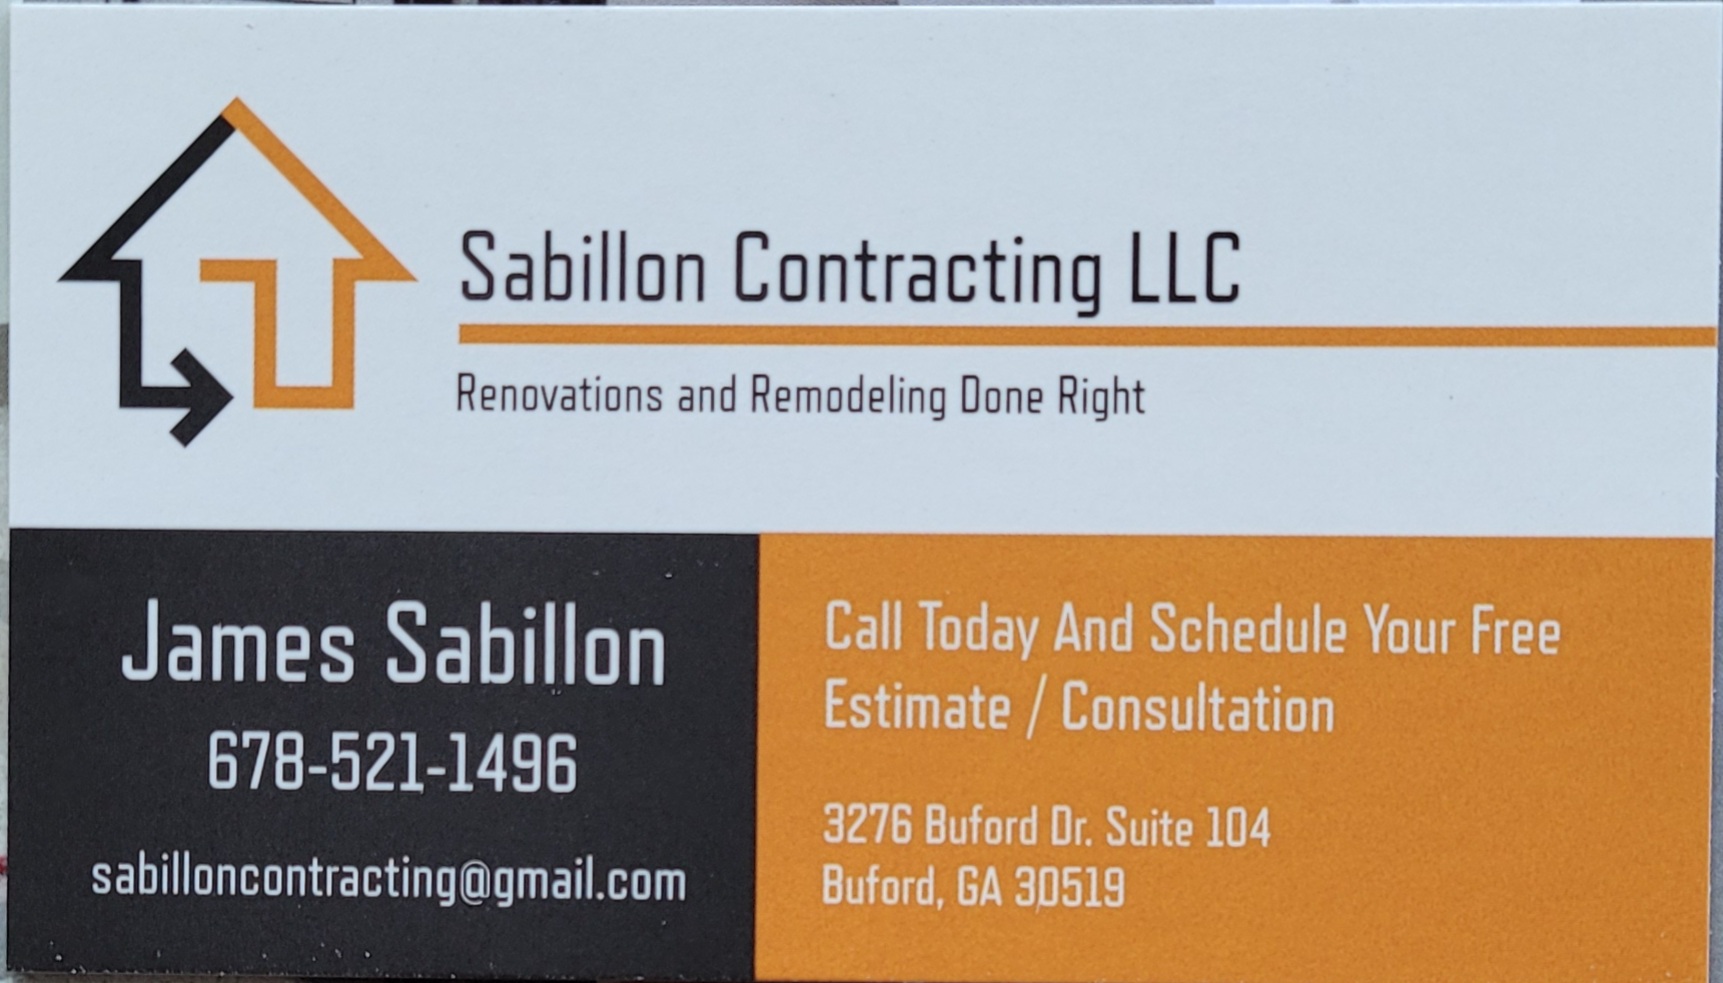 Sabillon Contracting Logo